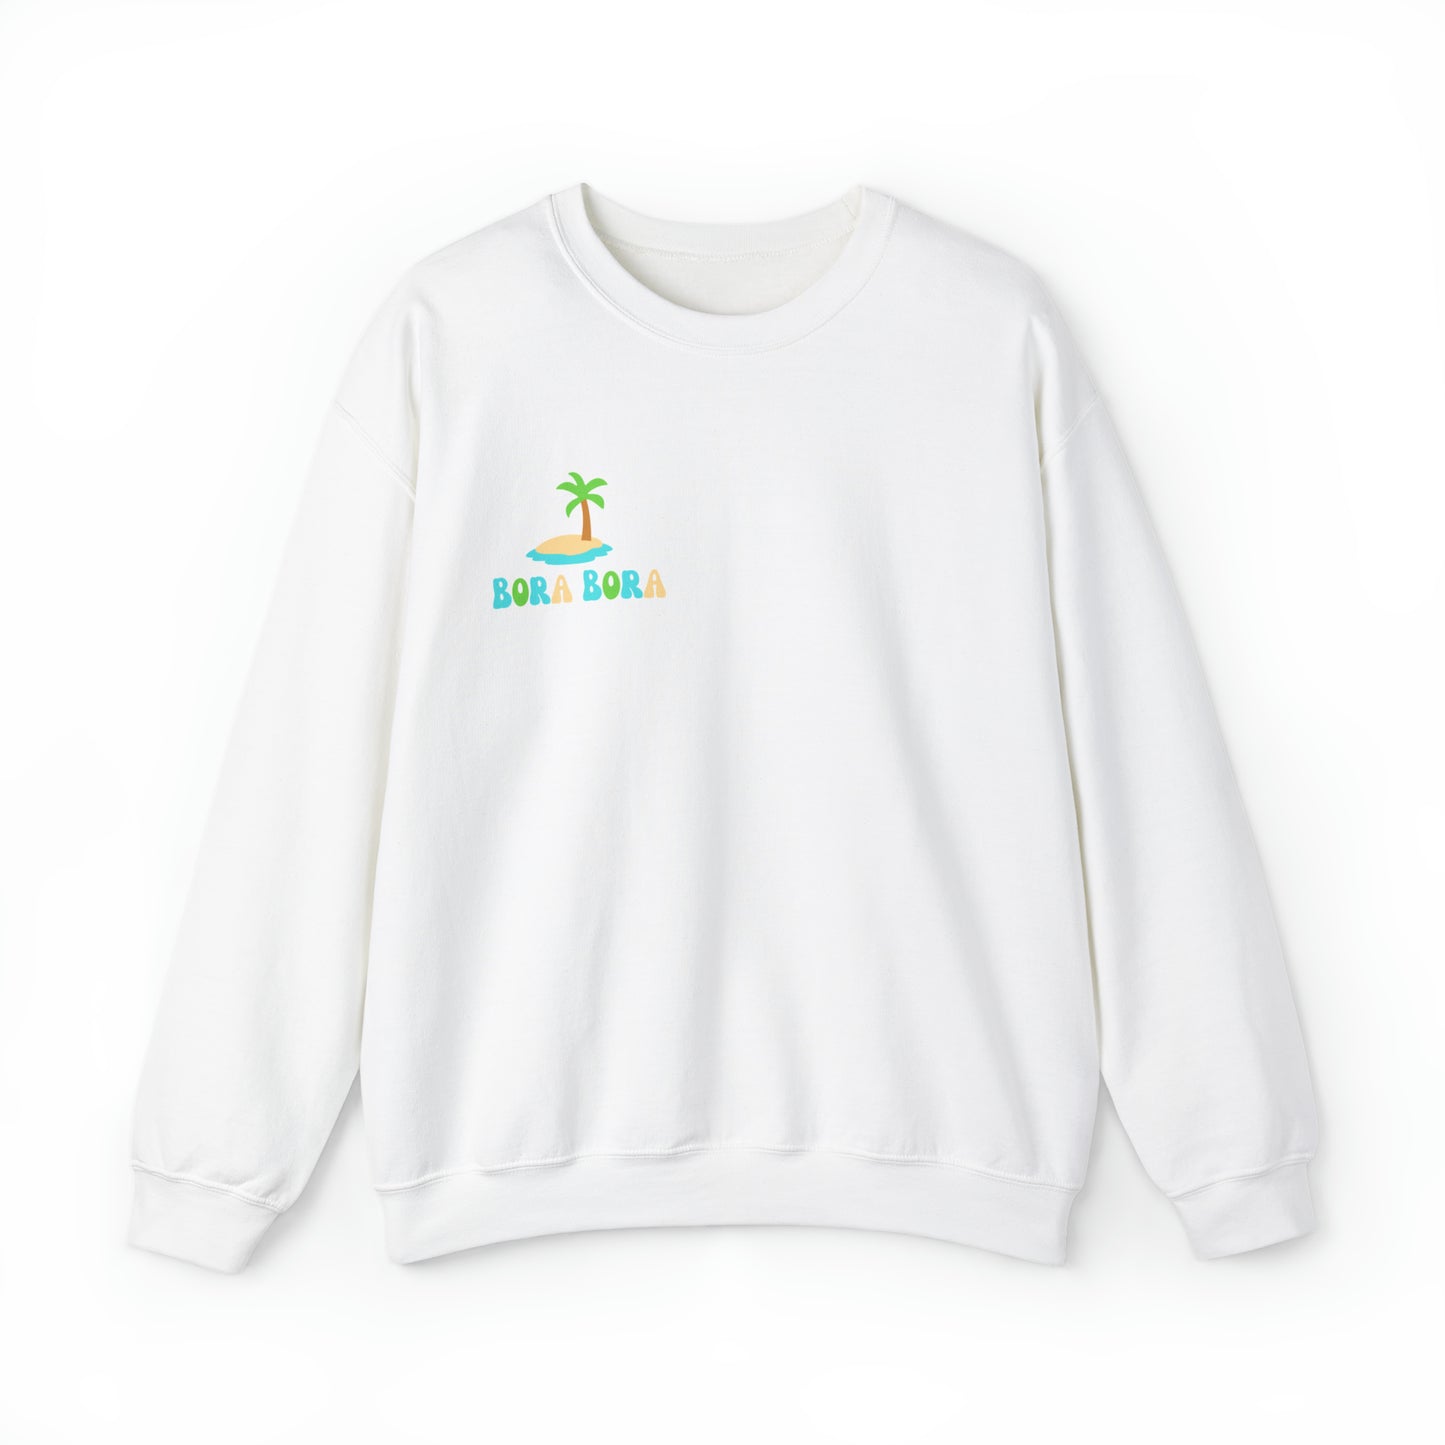 Bora Bora sweatshirt